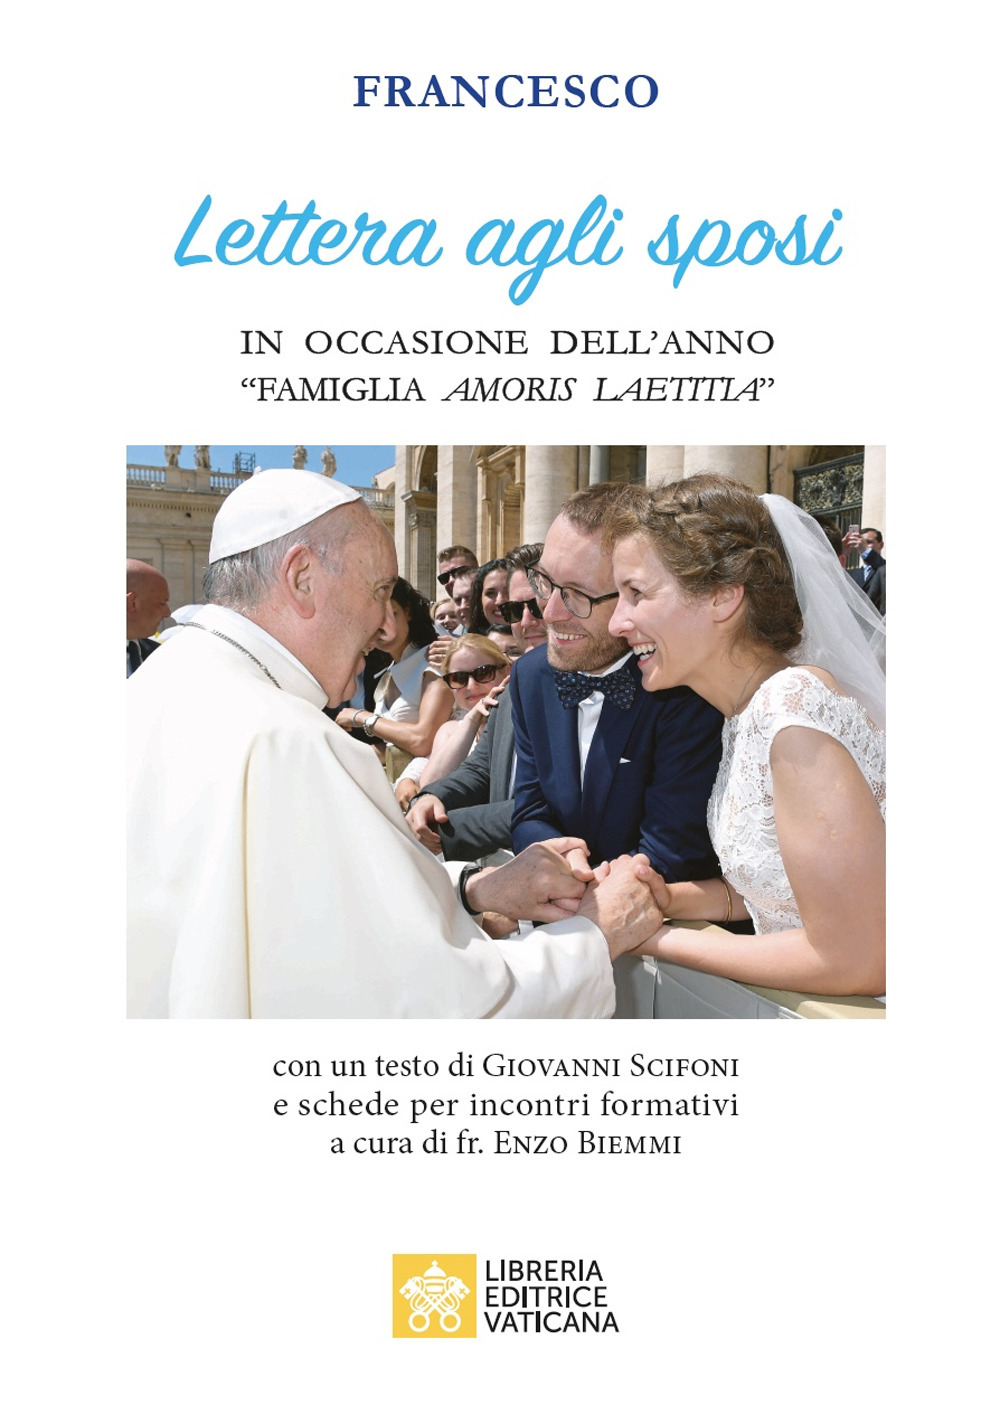 Image of Lettera agli sposi in occasione dell'anno «Famiglia amoris laetitia»